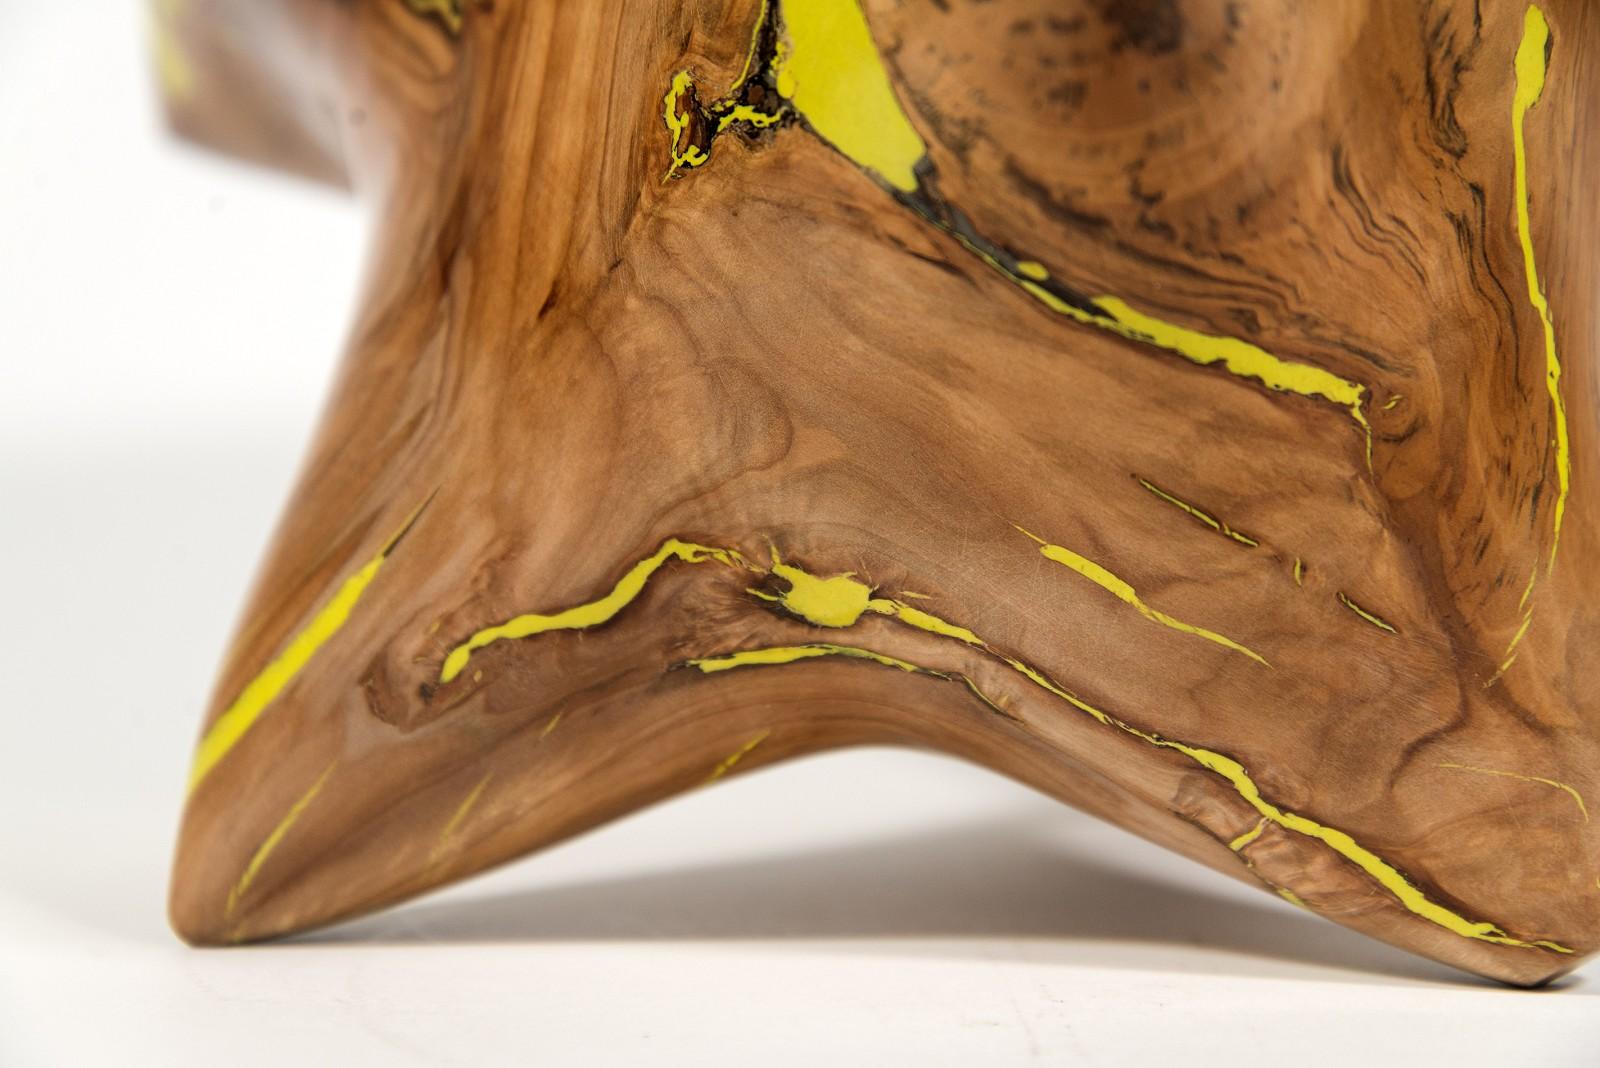 Shayne Dark hat die natürliche Schönheit der Apfelholzmaser in einzigartige zeitgenössische Skulpturen verwandelt. Der kanadische Künstler sammelte knorrige Maserknollen aus alten Obstgärten in Prince Edward County, schälte die Rinde ab und ließ sie